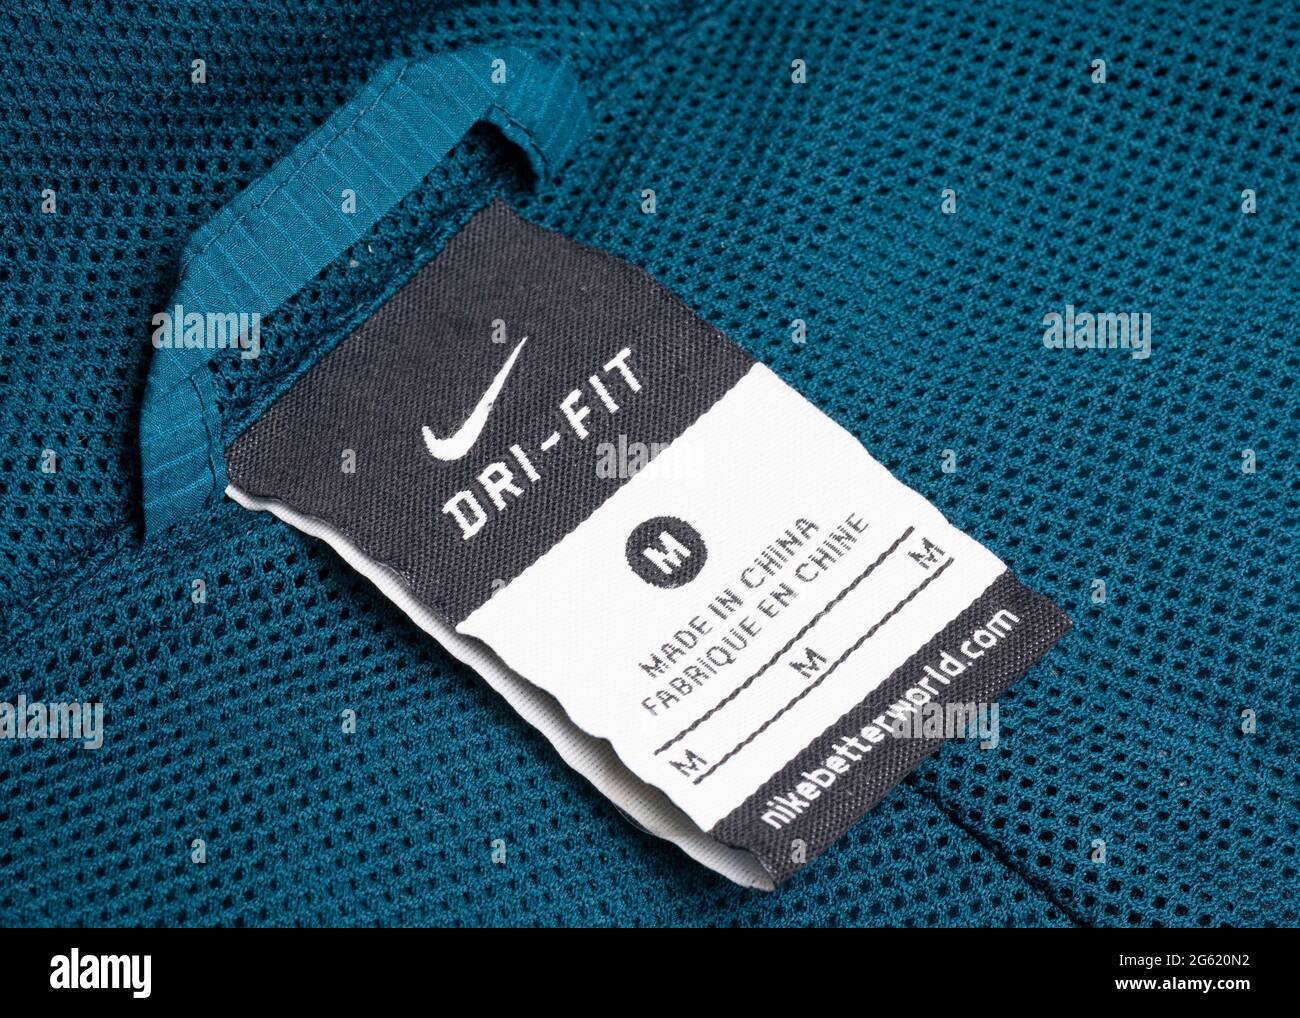 Etichetta Made in China sugli indumenti sportivi Nike Dry Fit Foto Stock